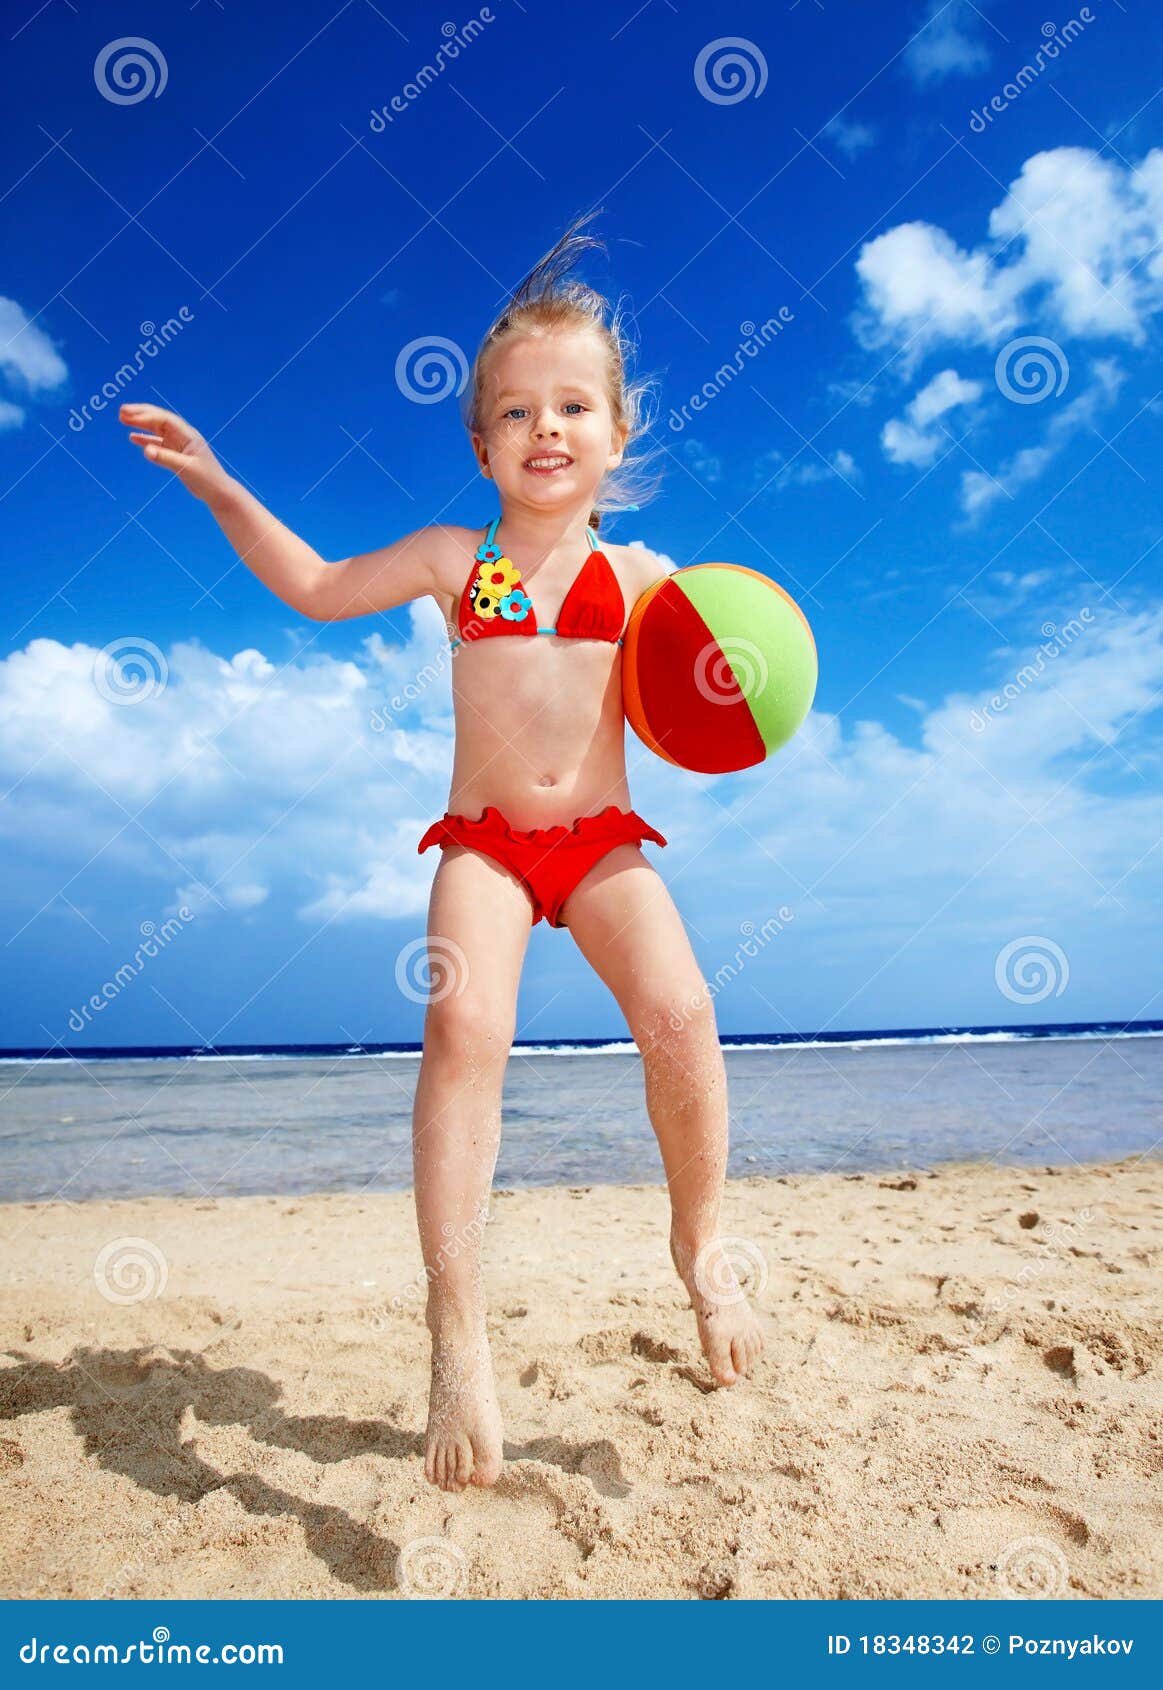 дети на голом пляже фото 47